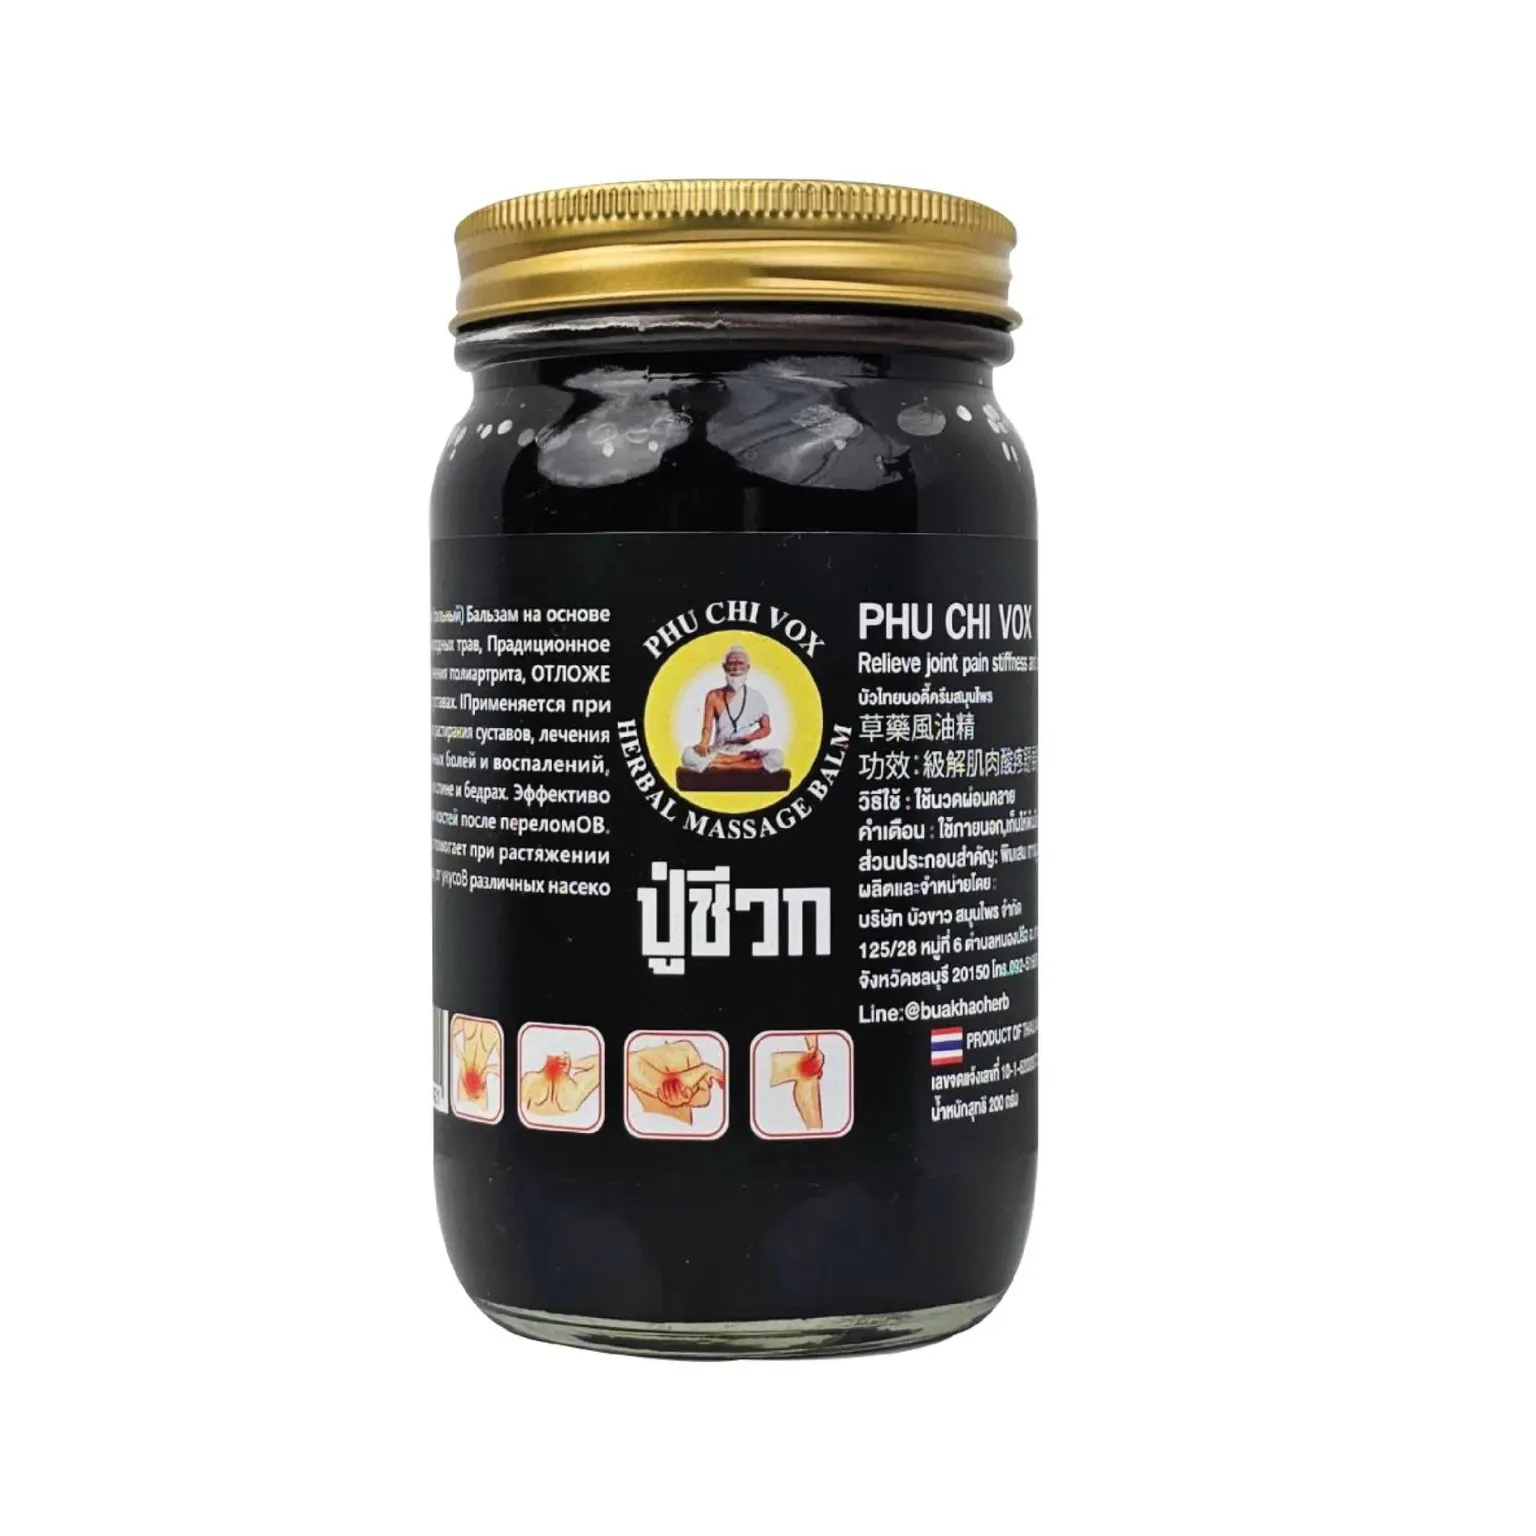 بلسم عشبي تايلاندي أسود متنفس منتجات جديدة تباع في رقع الأدوية الأكثر رواجًا المنتجات الرائجة